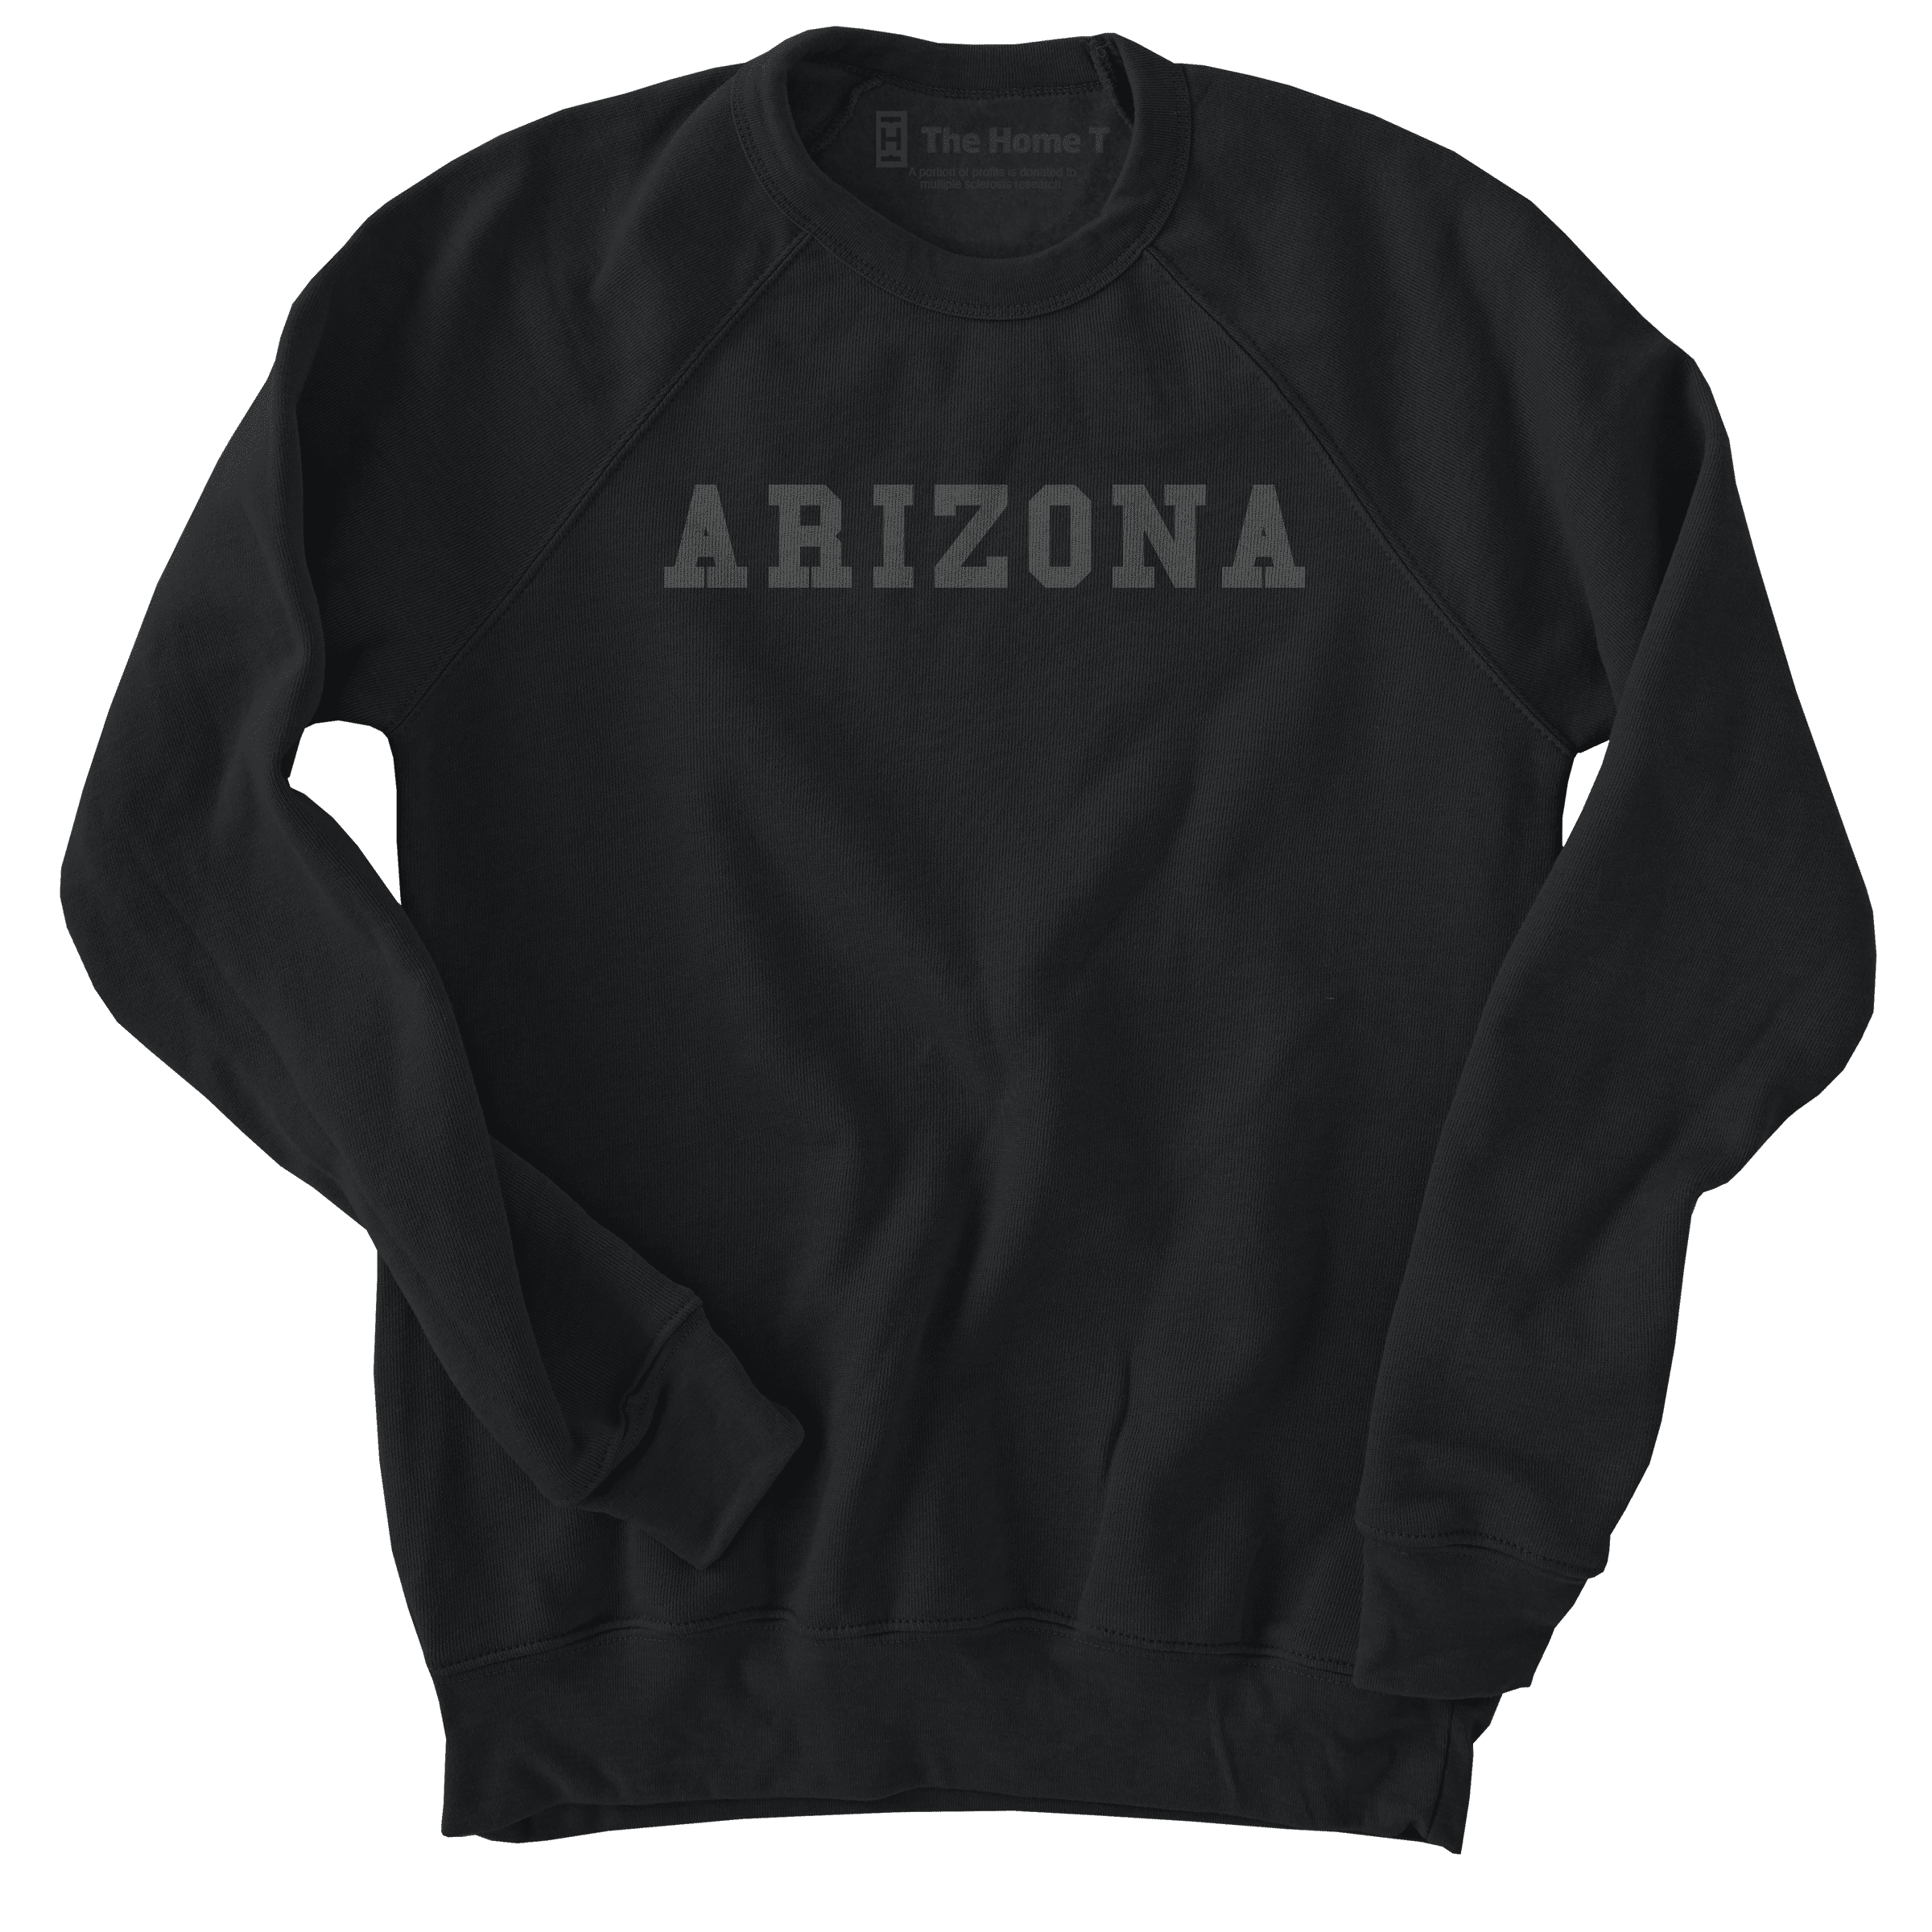 Arizona Black on Black